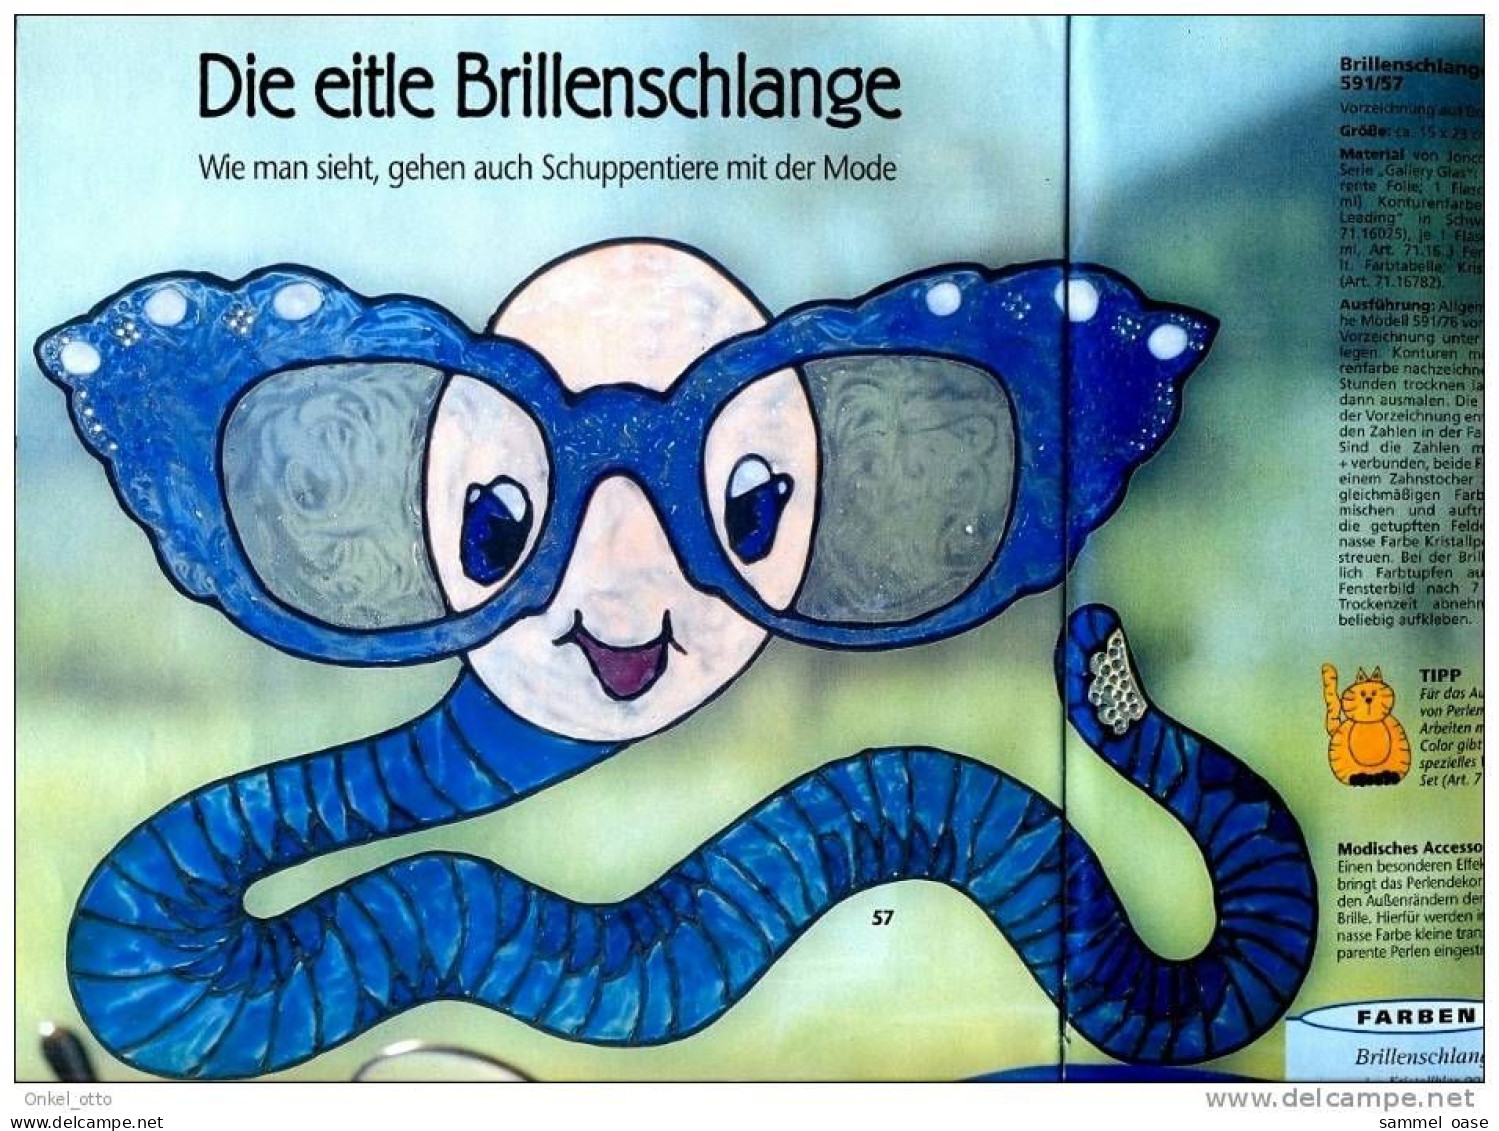 Zeitschrift - Window Color Tiermotive - Anna Spezial - 80 Gute Ideen - Von 2000 - Hobbies & Collections